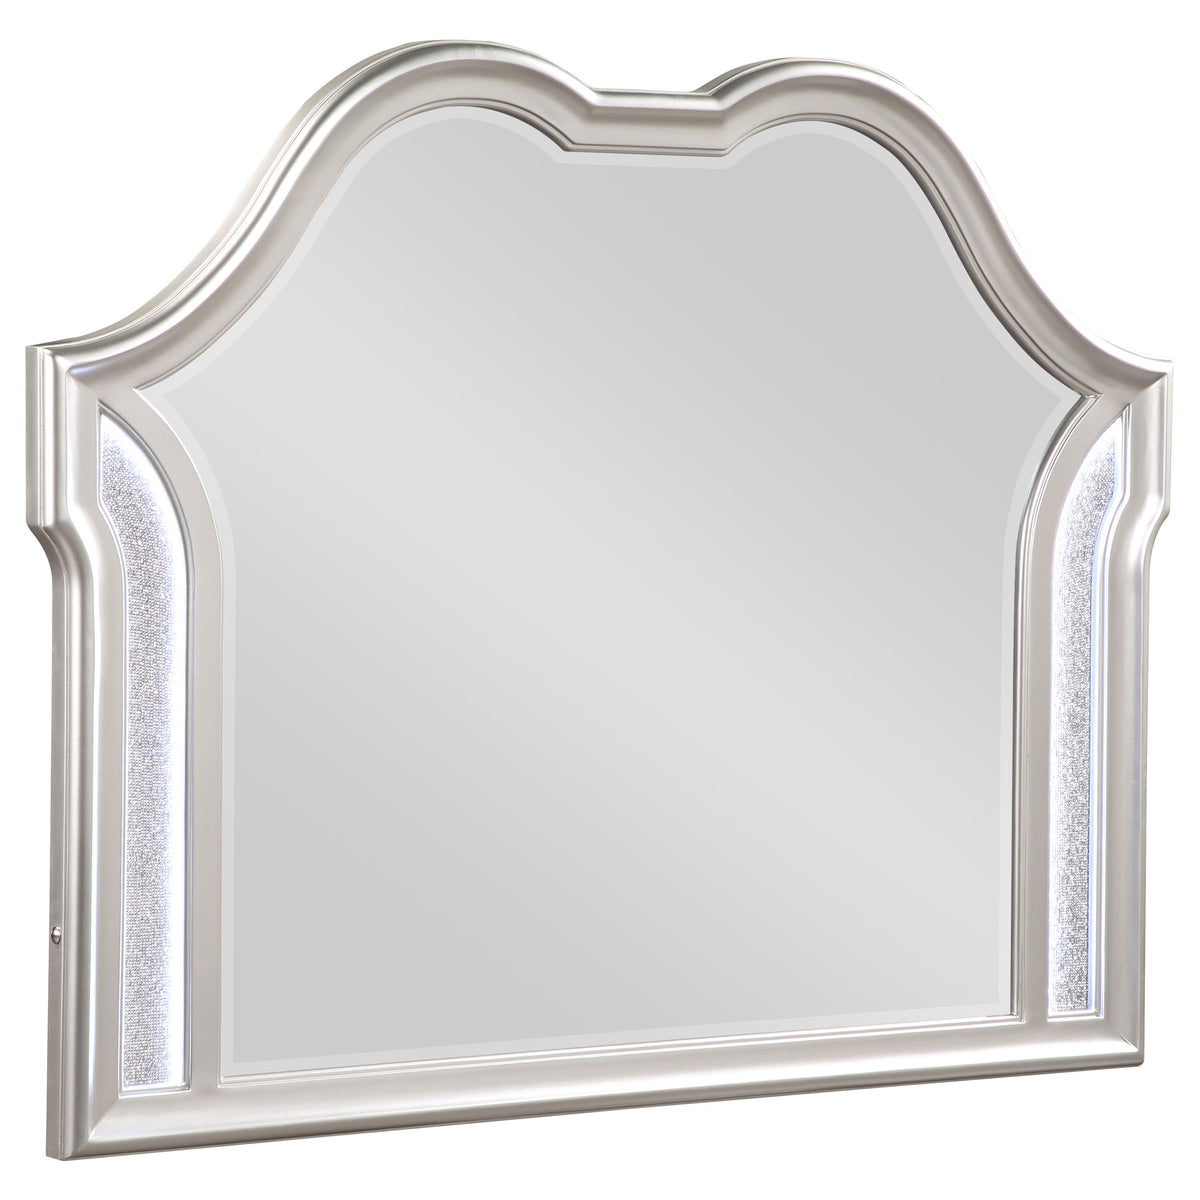 Evangeline Camel Top Dresser Mirror Silver Oak  Half Price Furniture